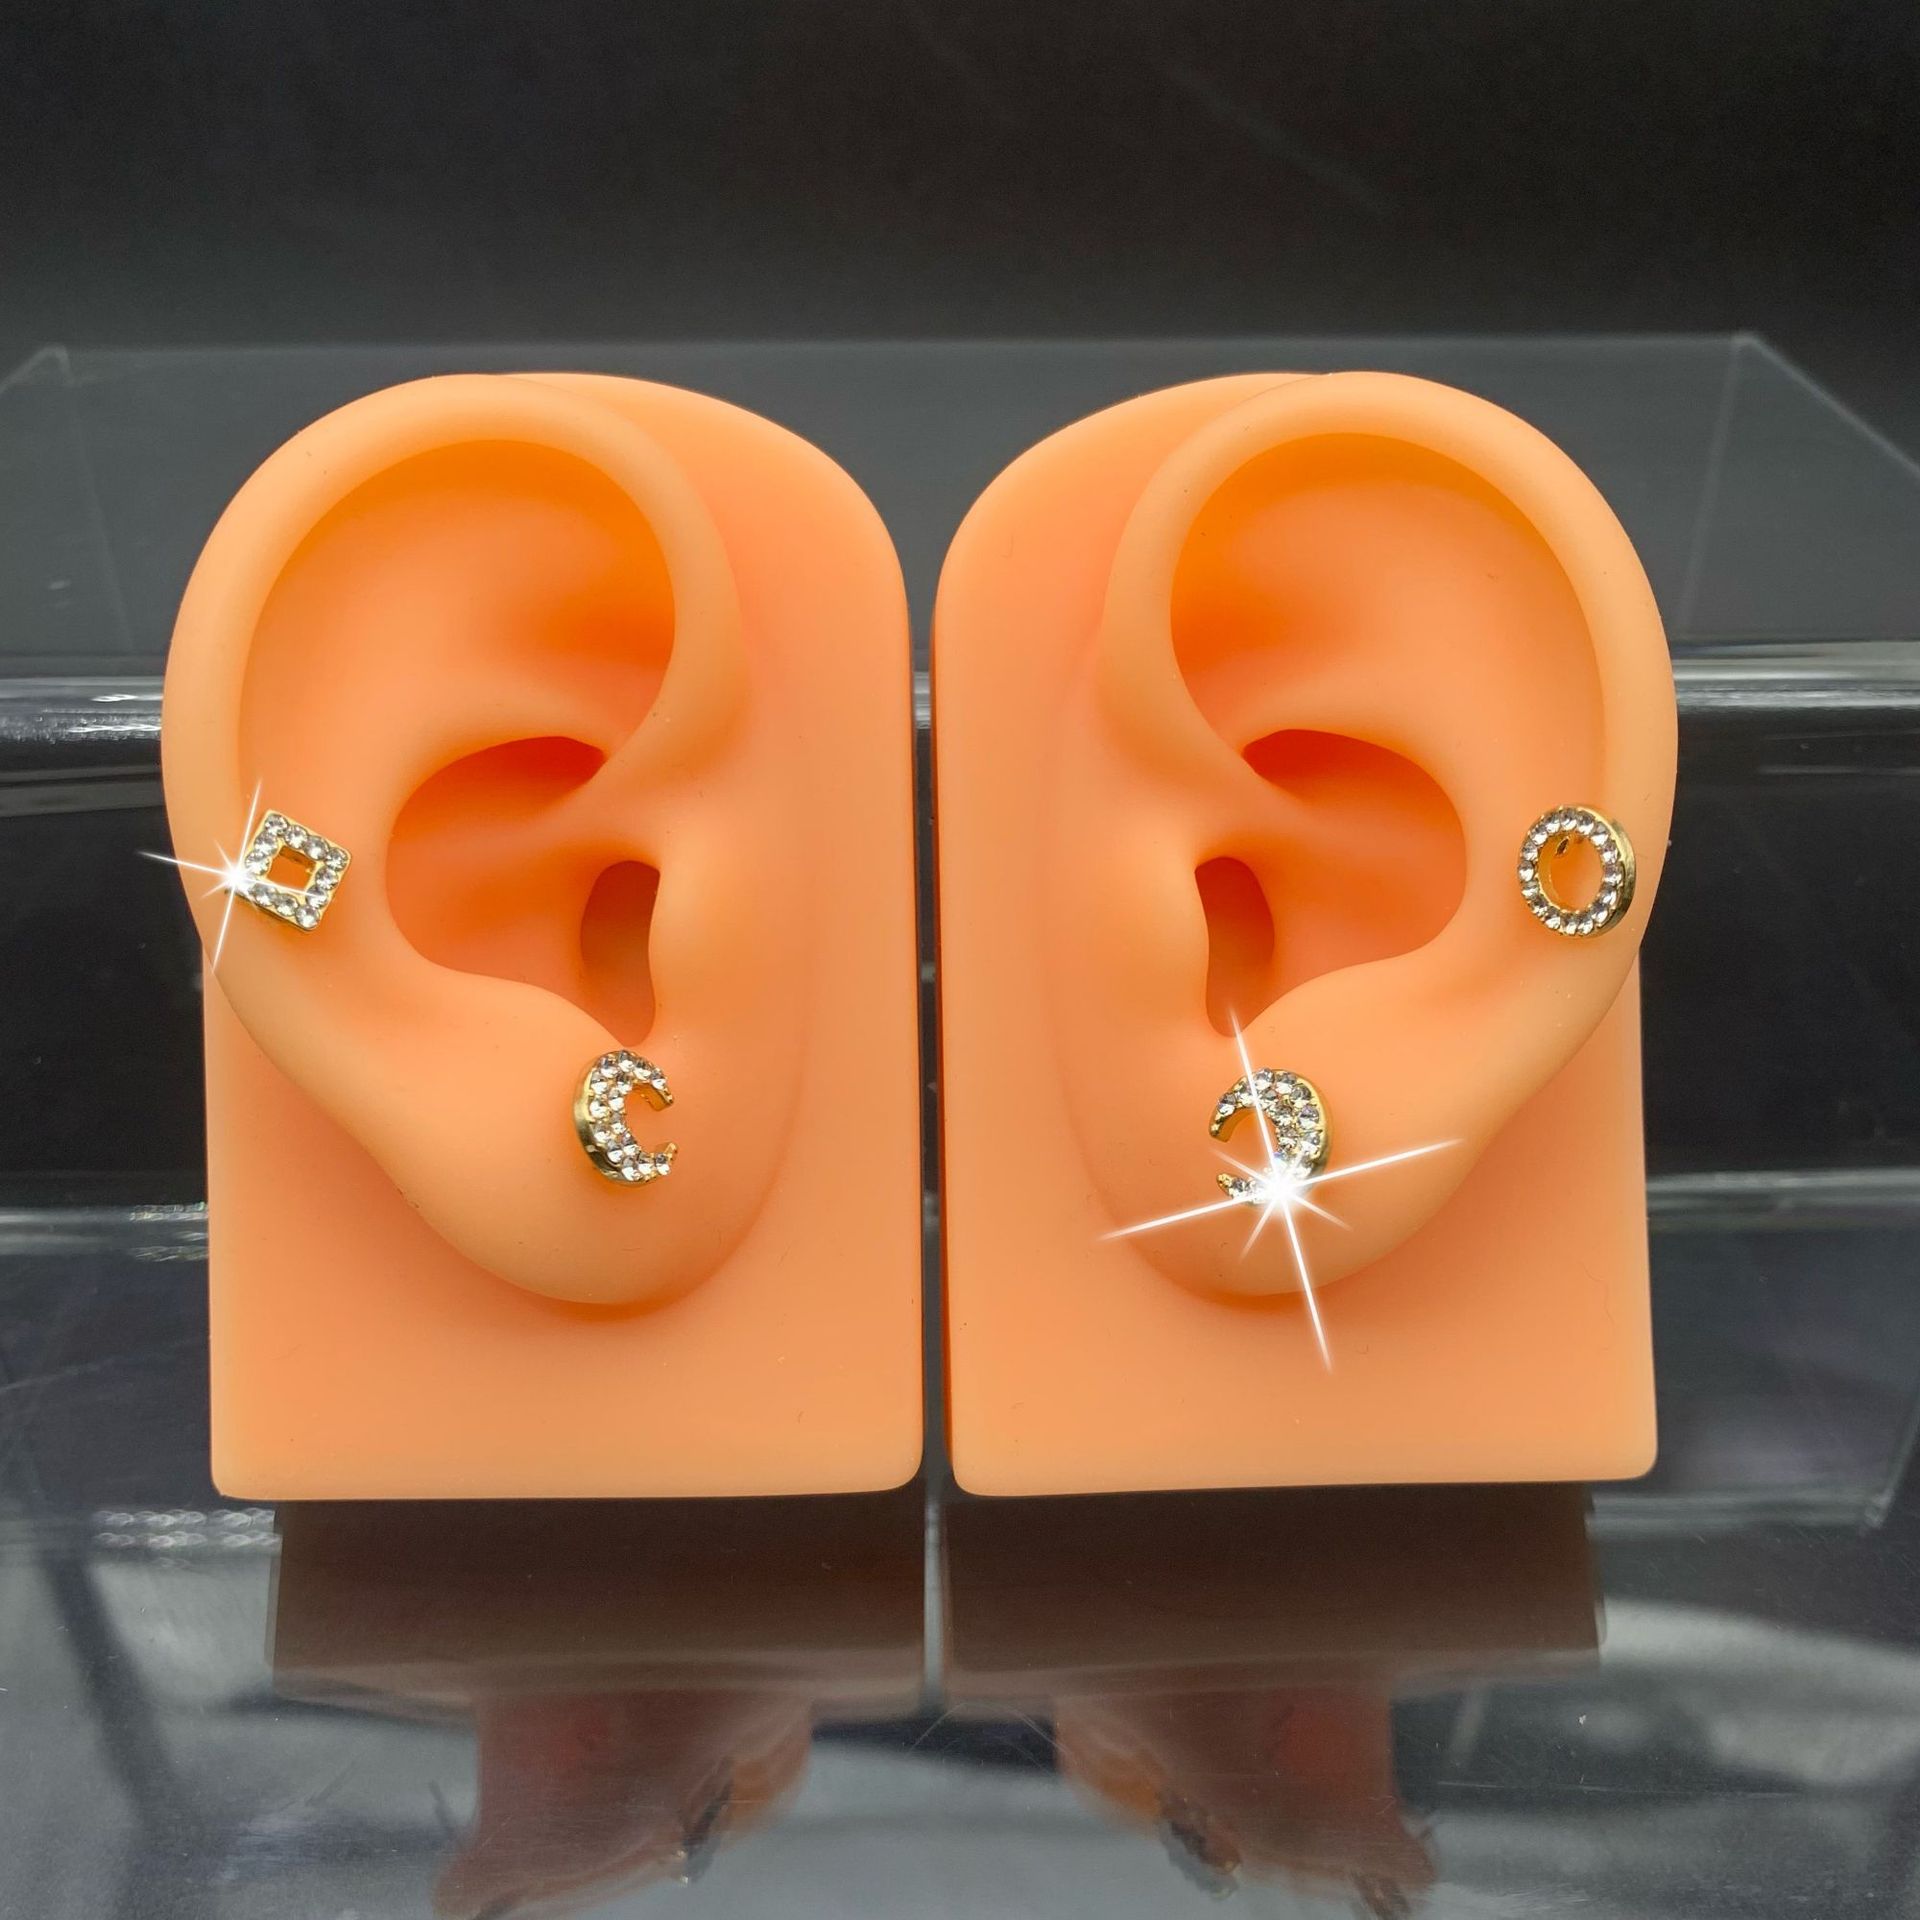 采耳道具练习展示品硅胶耳朵仿真耳朵模型 倒模道具展示耳朵耳穴